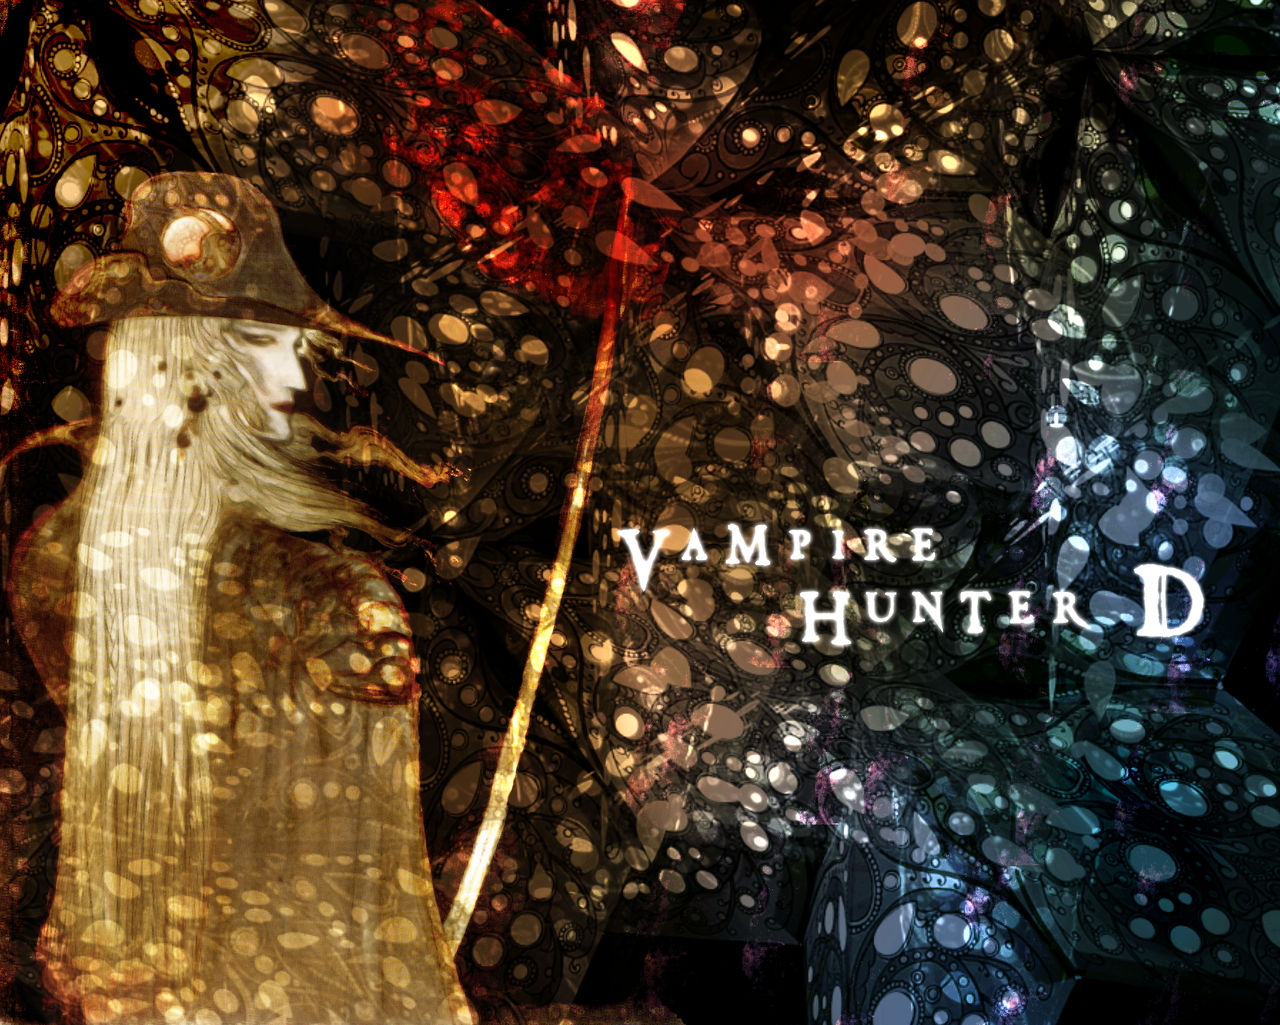 Vampire Hunter D wallpaper by SWFan1977 on DeviantArt